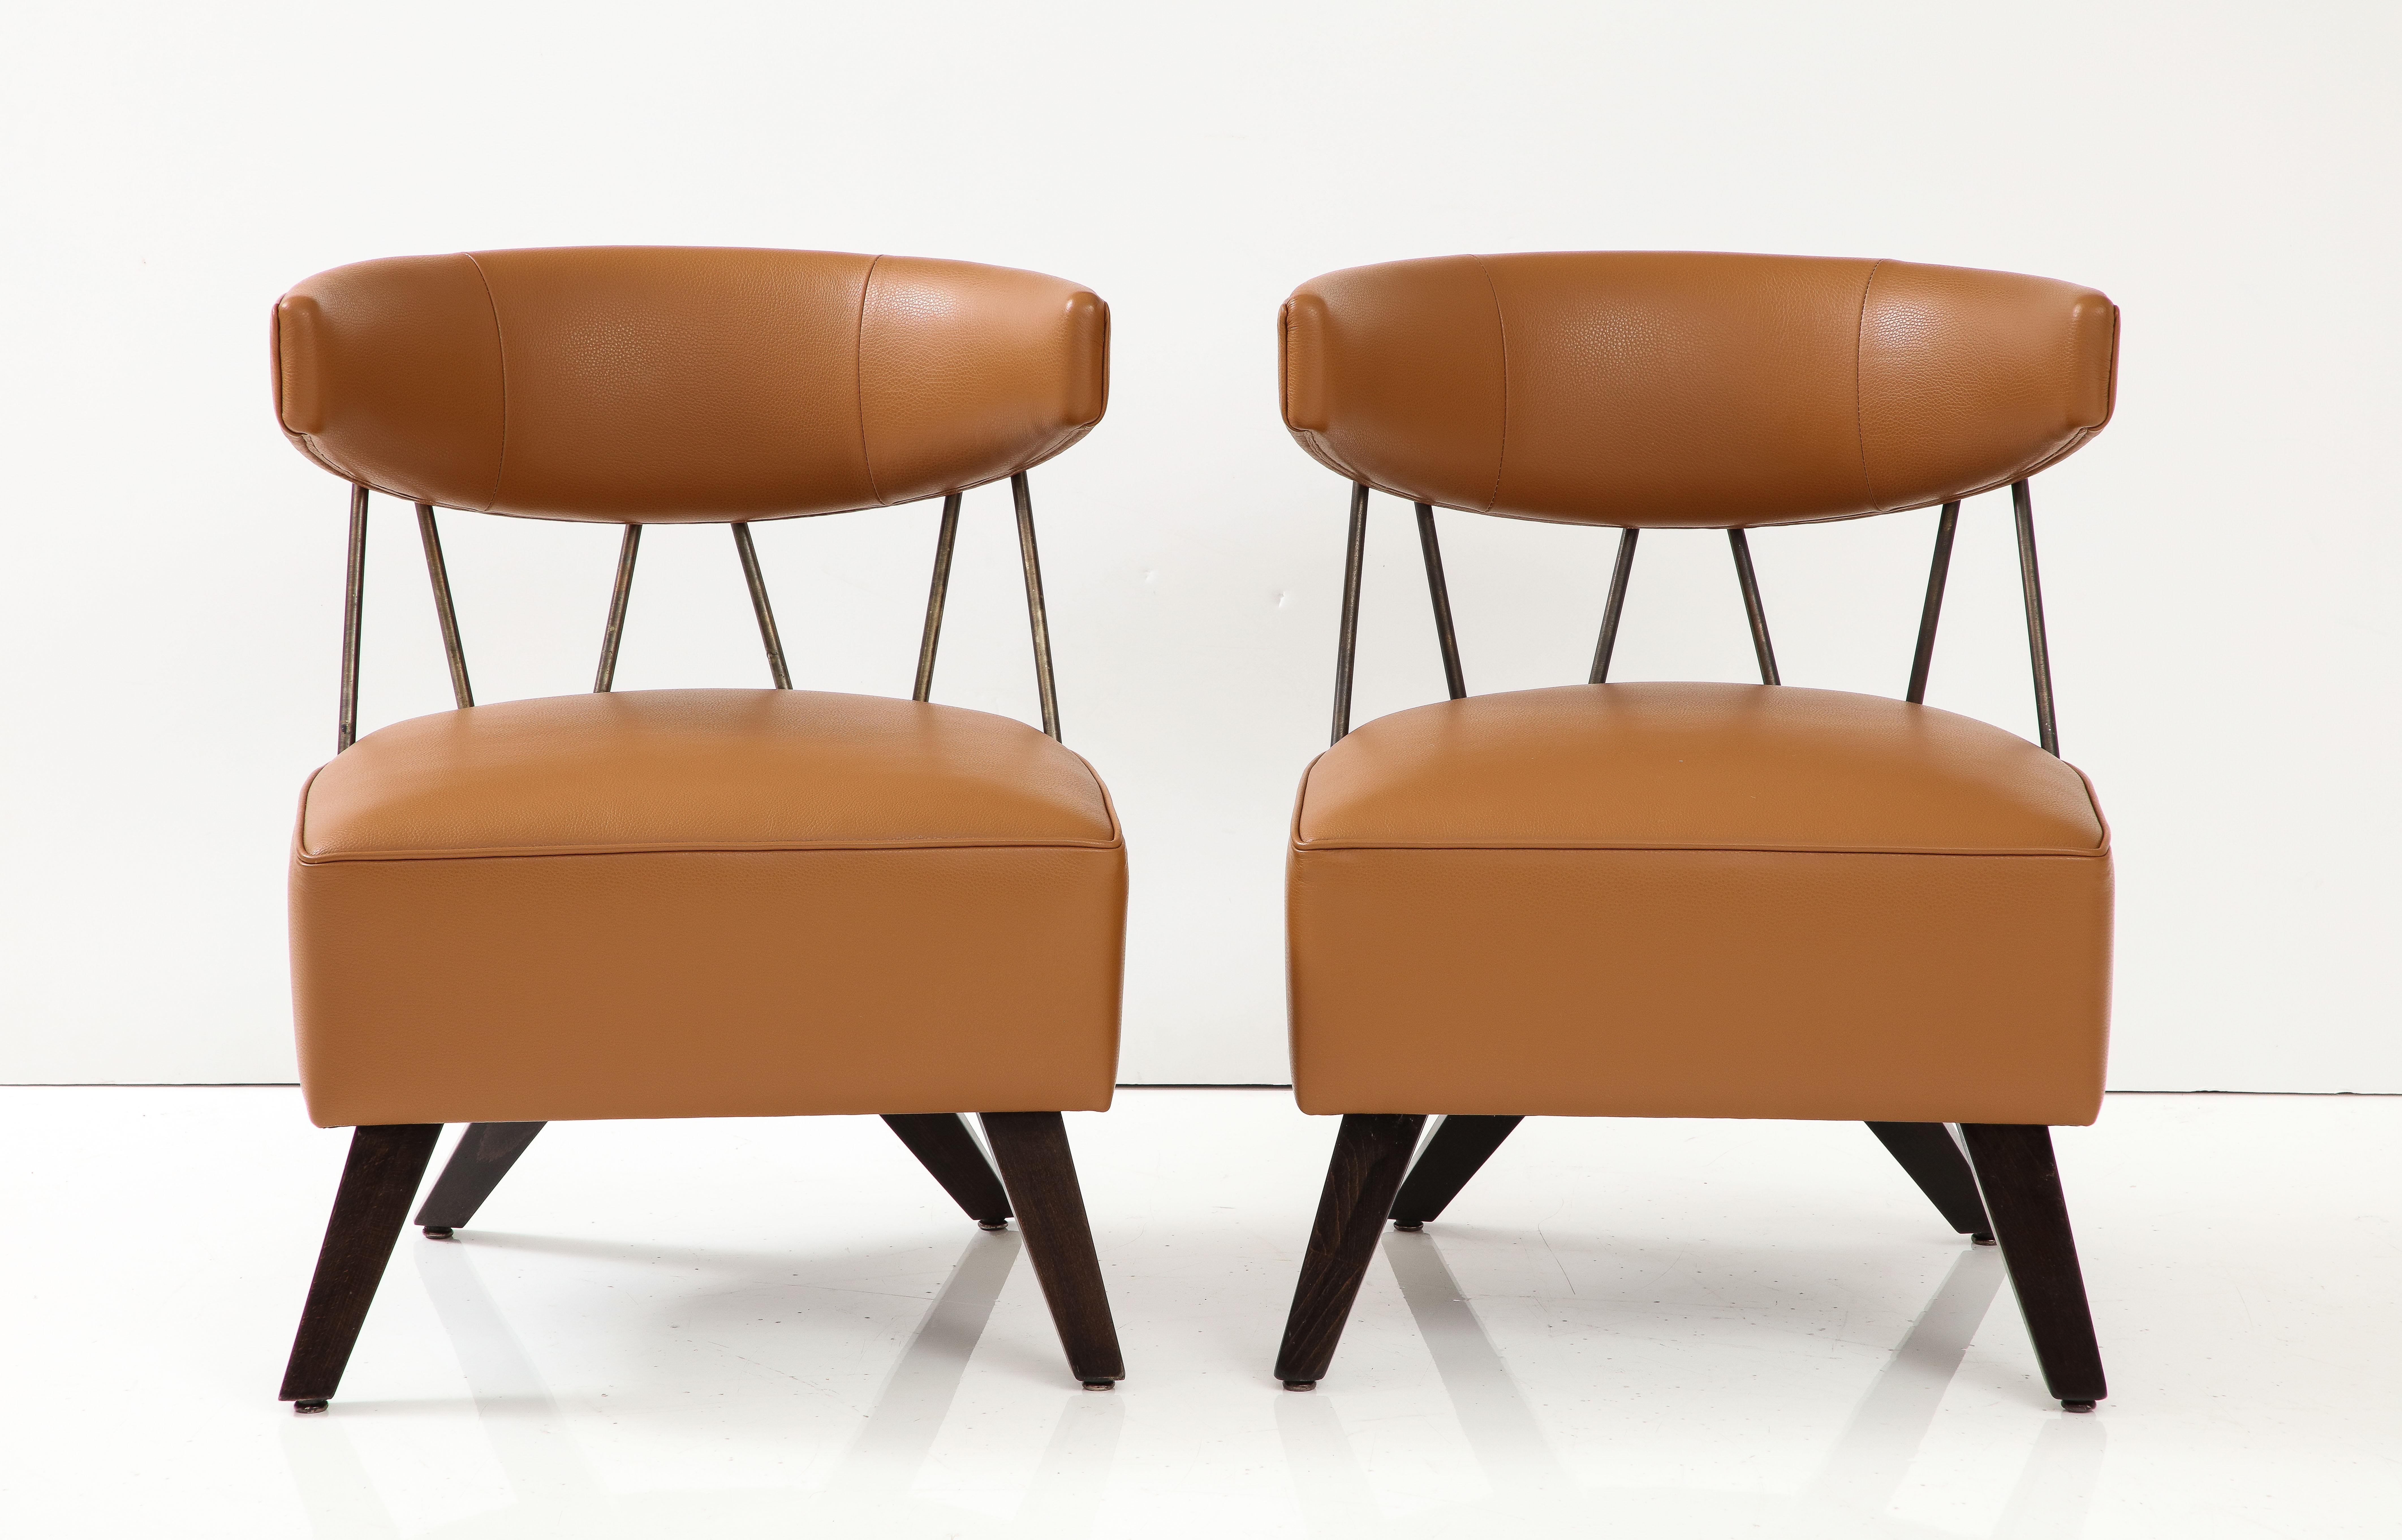 Beeindruckendes Paar von Klismos inspirierter Stühle, die Billy Haines zugeschrieben werden.
Die Stühle wurden schön in einem tabakfarbenen Leder neu gepolstert,
und werden in dem Buch 